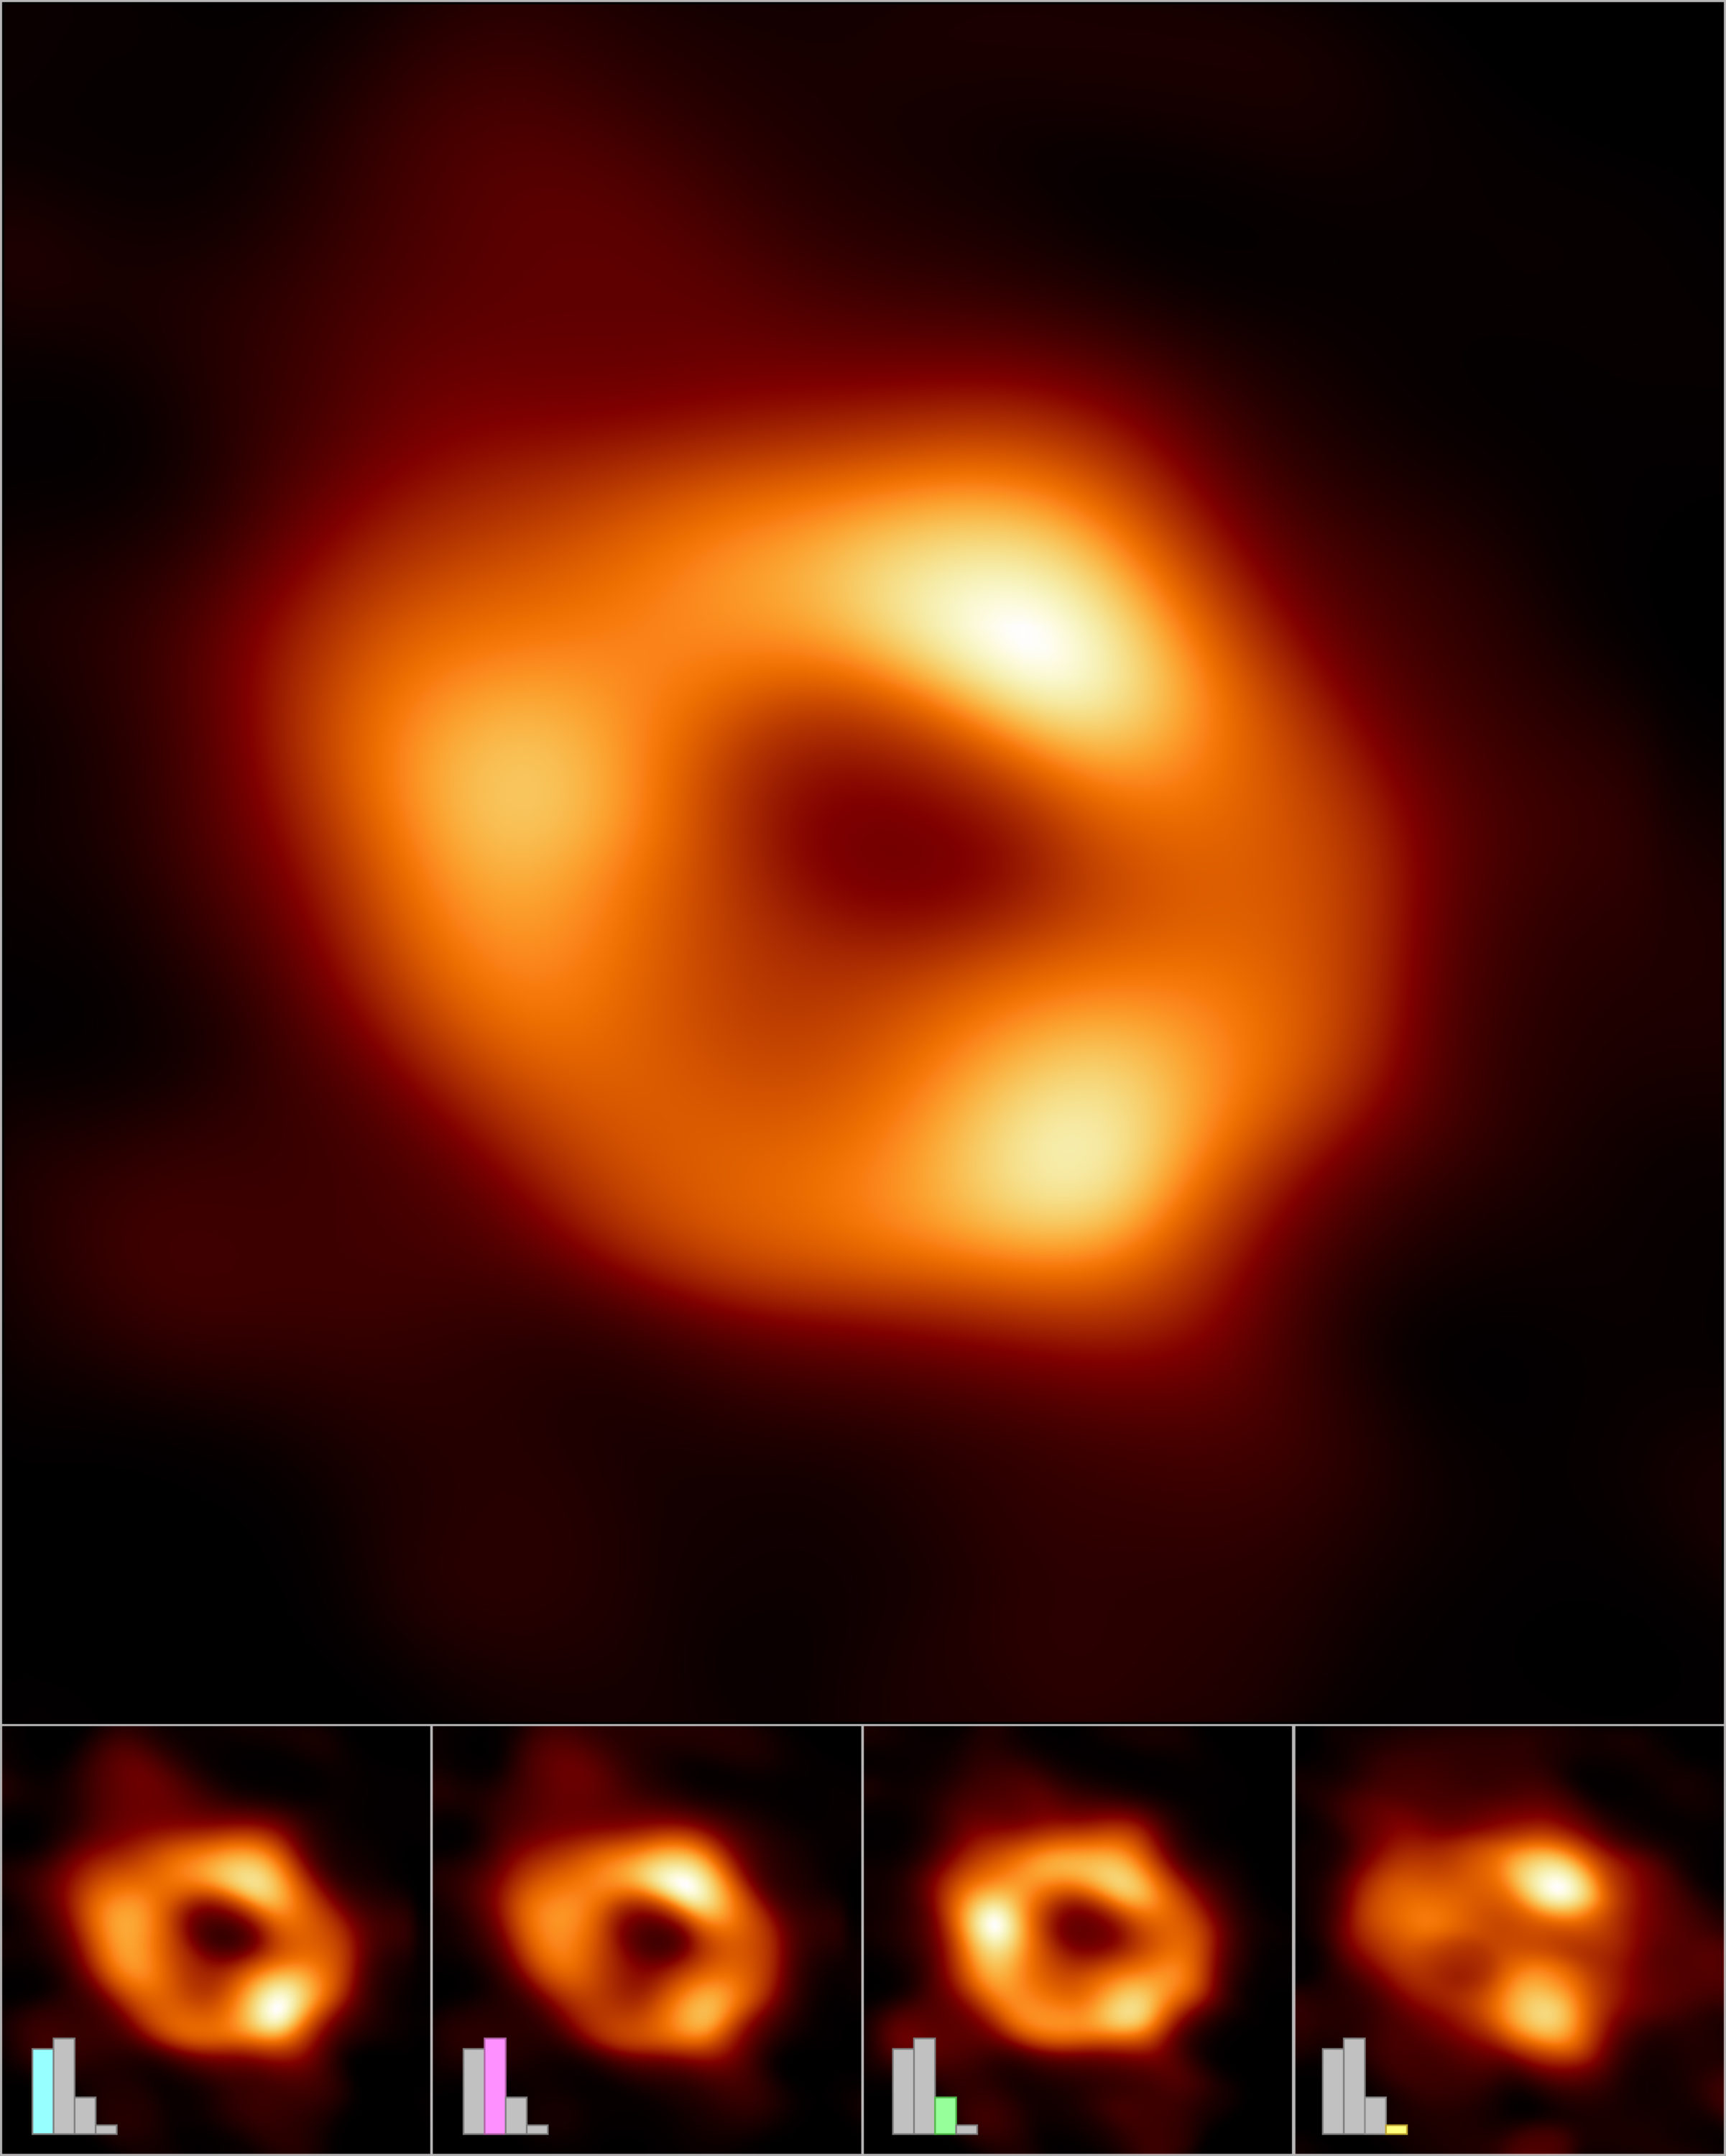 La Colaboración del Telescopio de Horizonte de Eventos (EHT) ha creado una única imagen (parte superior) del agujero negro supermasivo del centro de nuestra galaxia, llamado Sagitario A* (o Sgr A* para abreviar), combinando imágenes extraídas de las observaciones del EHT. La imagen principal se produjo promediando miles de imágenes creadas con diferentes métodos computacionales, todos los cuales se ajustan con precisión a los datos del EHT. Esta imagen promediada conserva las características más frecuentes en las distintas imágenes y suprime las que aparecen con menor frecuencia. Además, las imágenes pueden agruparse en cuatro grupos en función de las características en común. En la fila inferior se muestra una imagen promediada y representativa de cada uno de los cuatro grupos. Tres de los grupos muestran una estructura anular, pero con una distribución diferente del brillo alrededor del anillo. El cuarto grupo contiene imágenes que también se ajustan a los datos pero que no parecen anillos. Los diagramas de barras muestran el número relativo de imágenes que pertenecen a cada grupo. Miles de imágenes pertenecen a cada uno de los tres primeros grupos, mientras que el cuarto y más pequeño contiene sólo cientos de imágenes. Las alturas de las barras indican el "peso" relativo, o la contribución de cada grupo a la imagen promediada en la parte superior. Créditos: Colaboración EHT